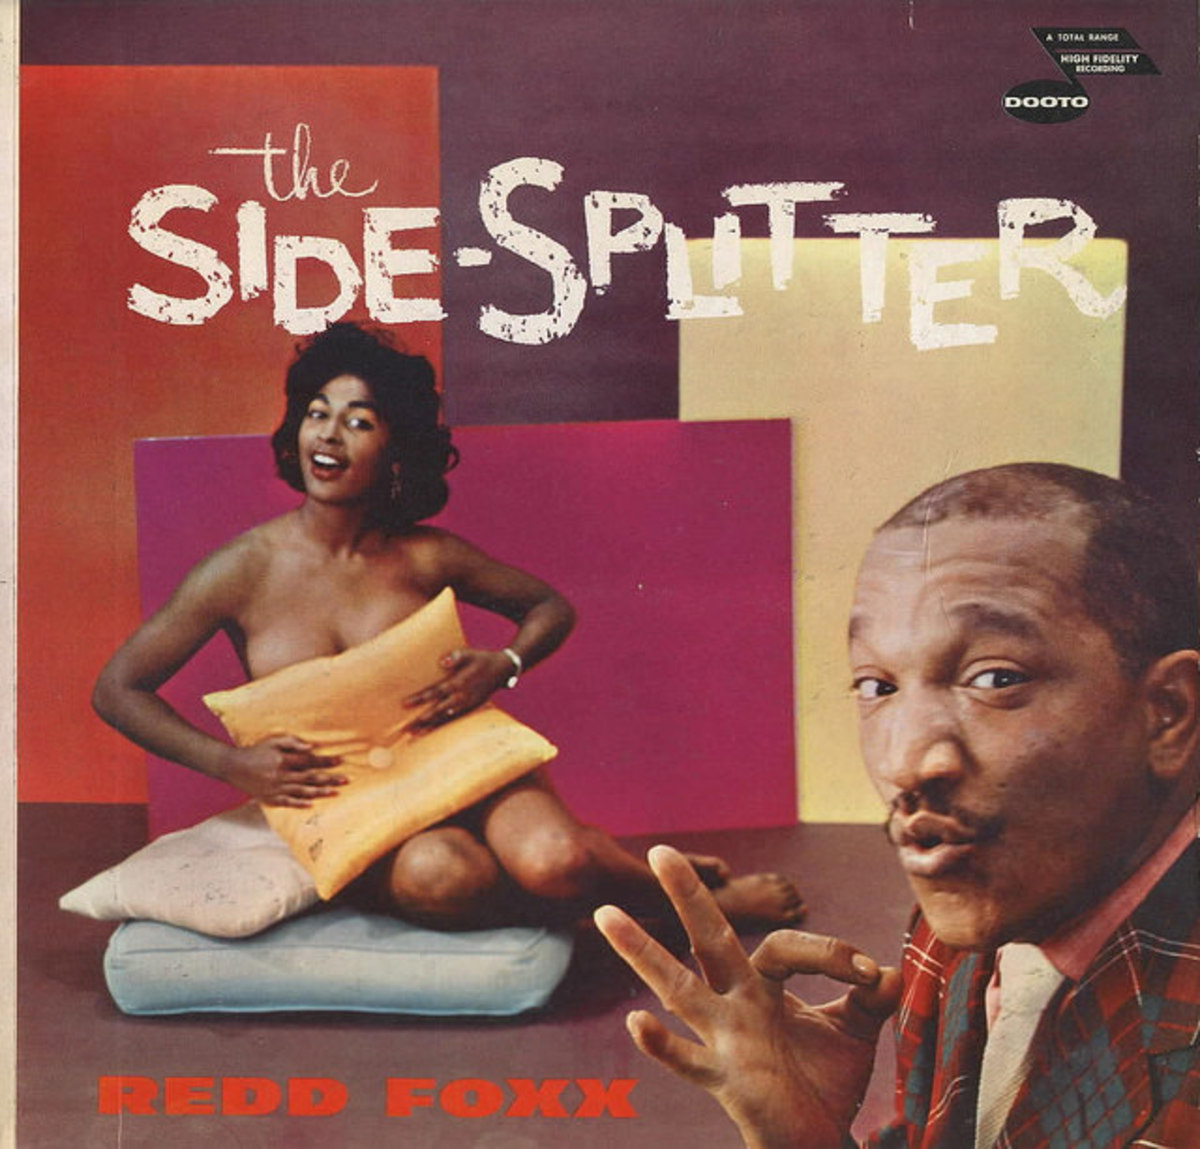 Redd Foxx "Side Splitter" DooTone Records DTL 253 12" LP Vinyl Record (1959)